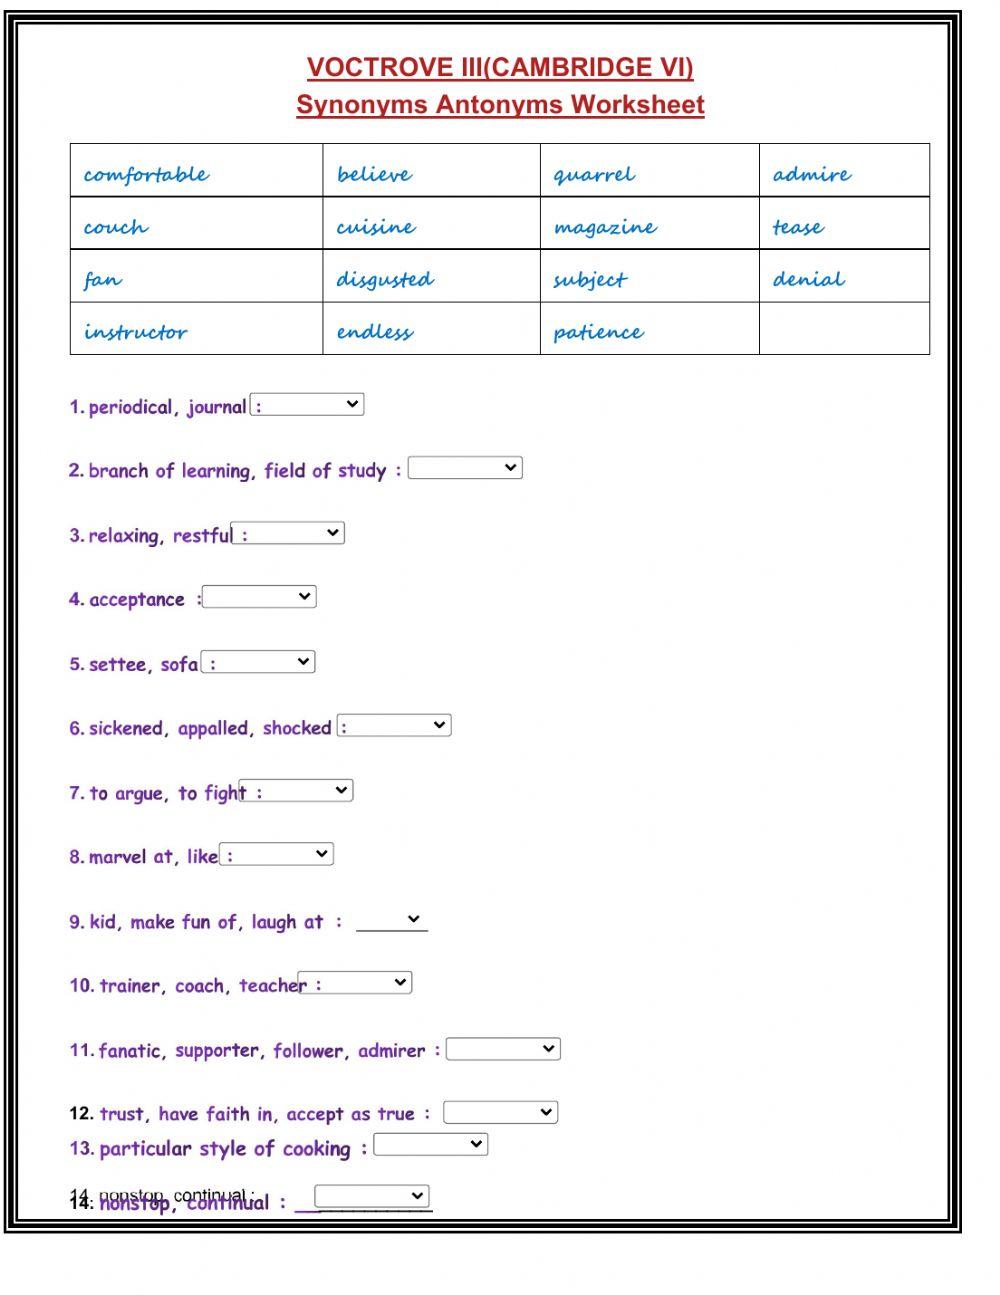 Vocabulary (Antonyms & Synonyms)